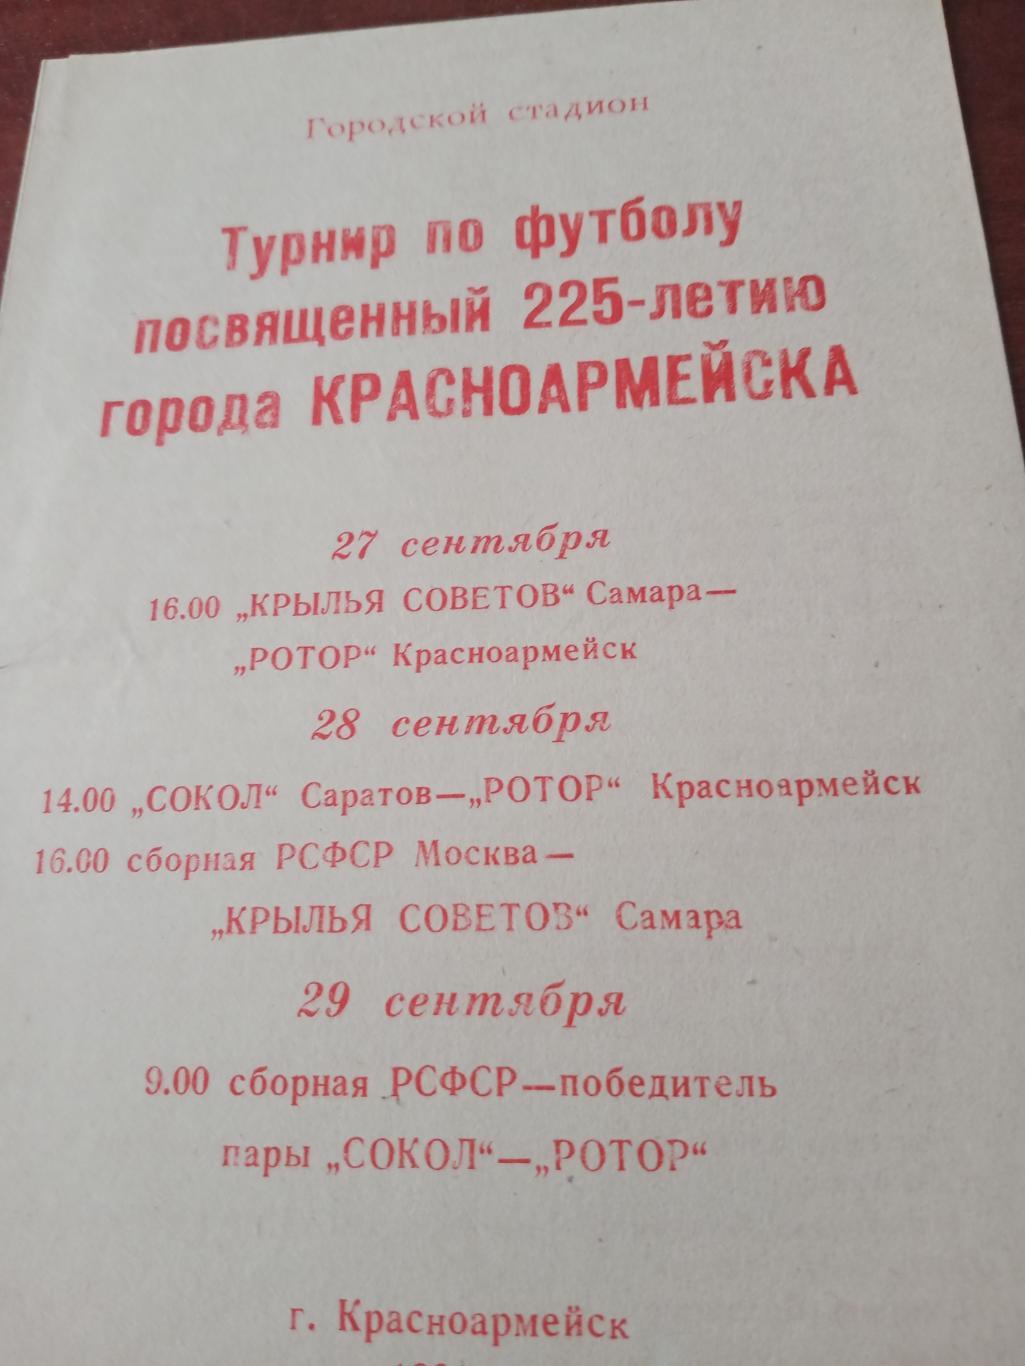 Турнир 225-летию города Красноармейска- 1991 г.